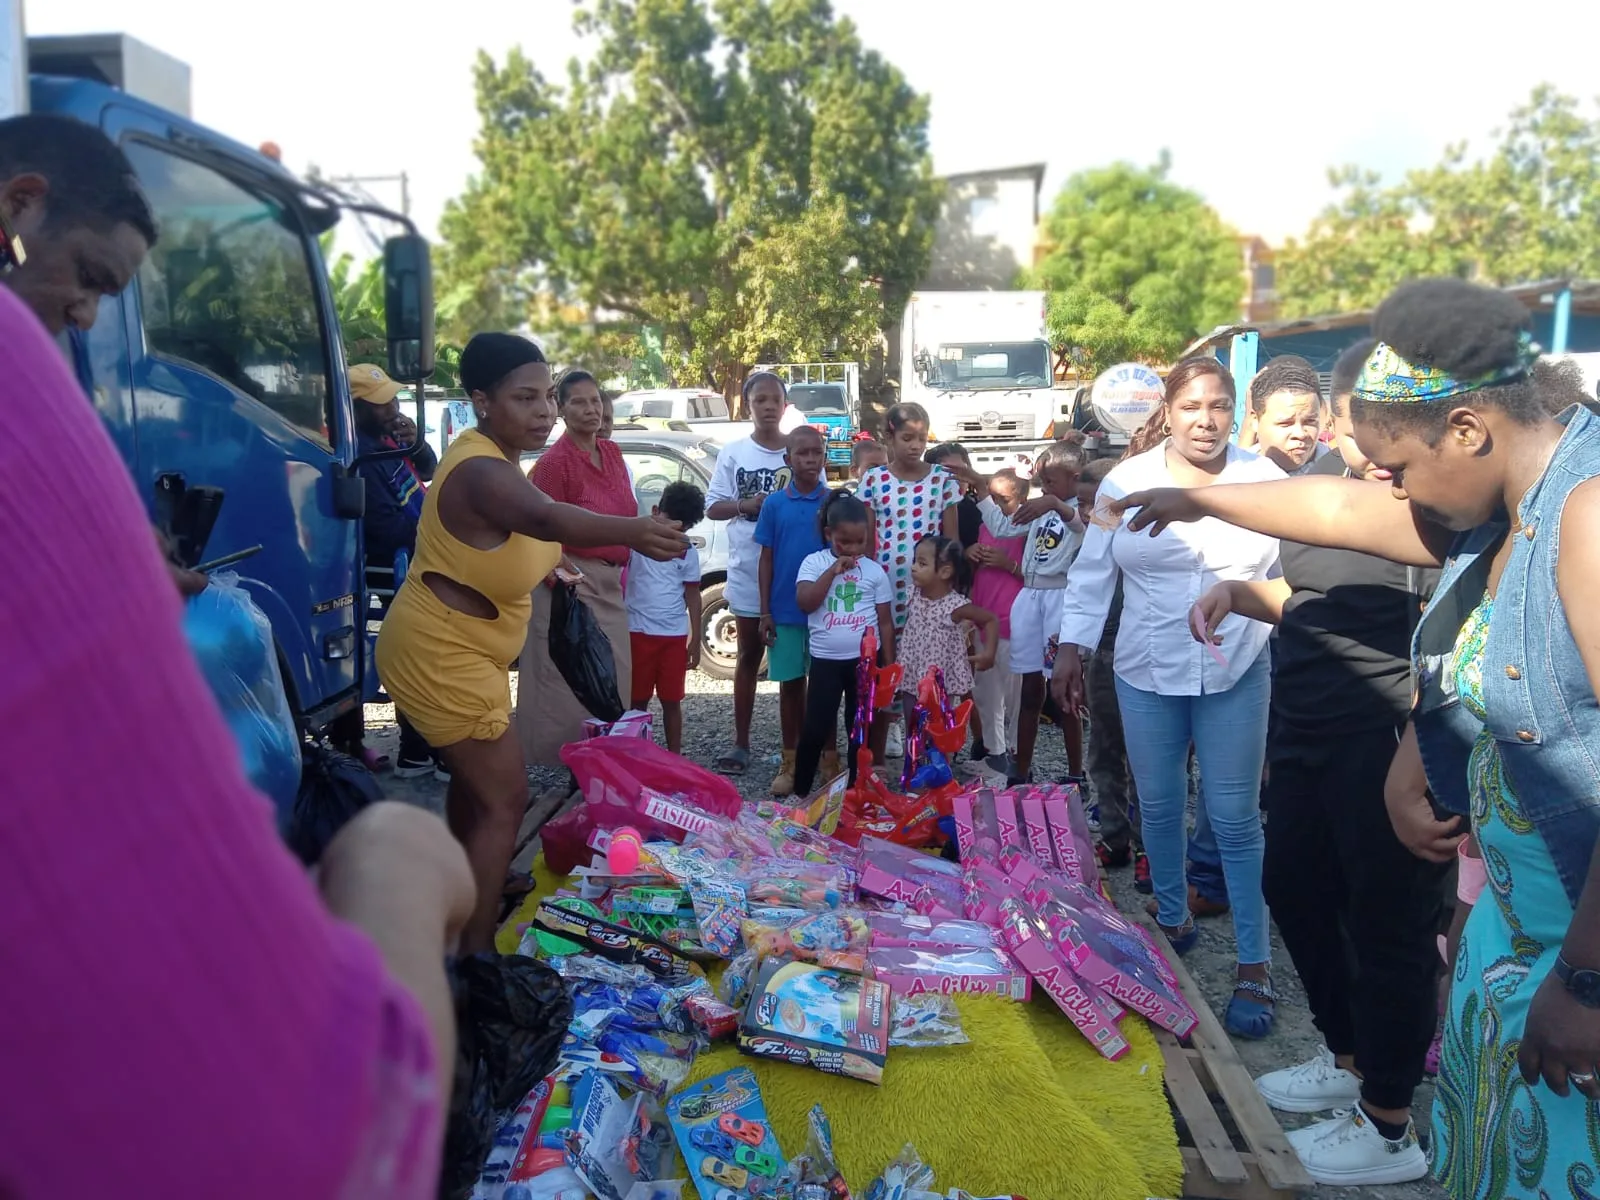 Los Girasoles celebra con éxito campaña ‘Plástico por Juguetes’ con apoyo comunitario